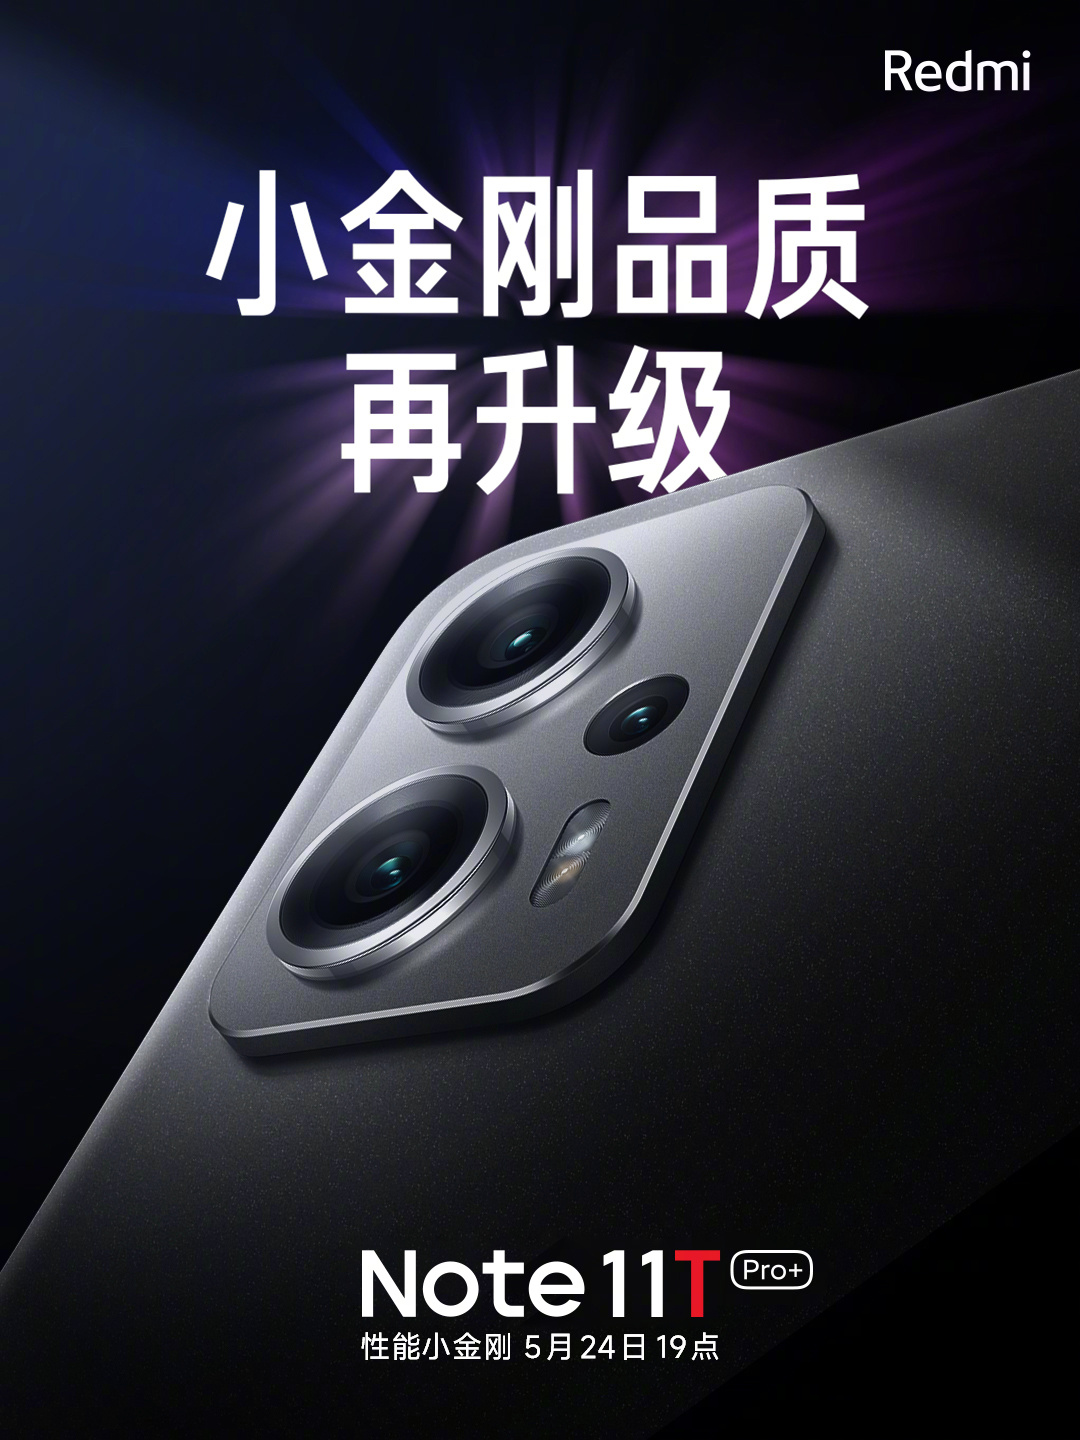 premiera Redmi Note 11T Pro Plus cena specyfikacja techniczna